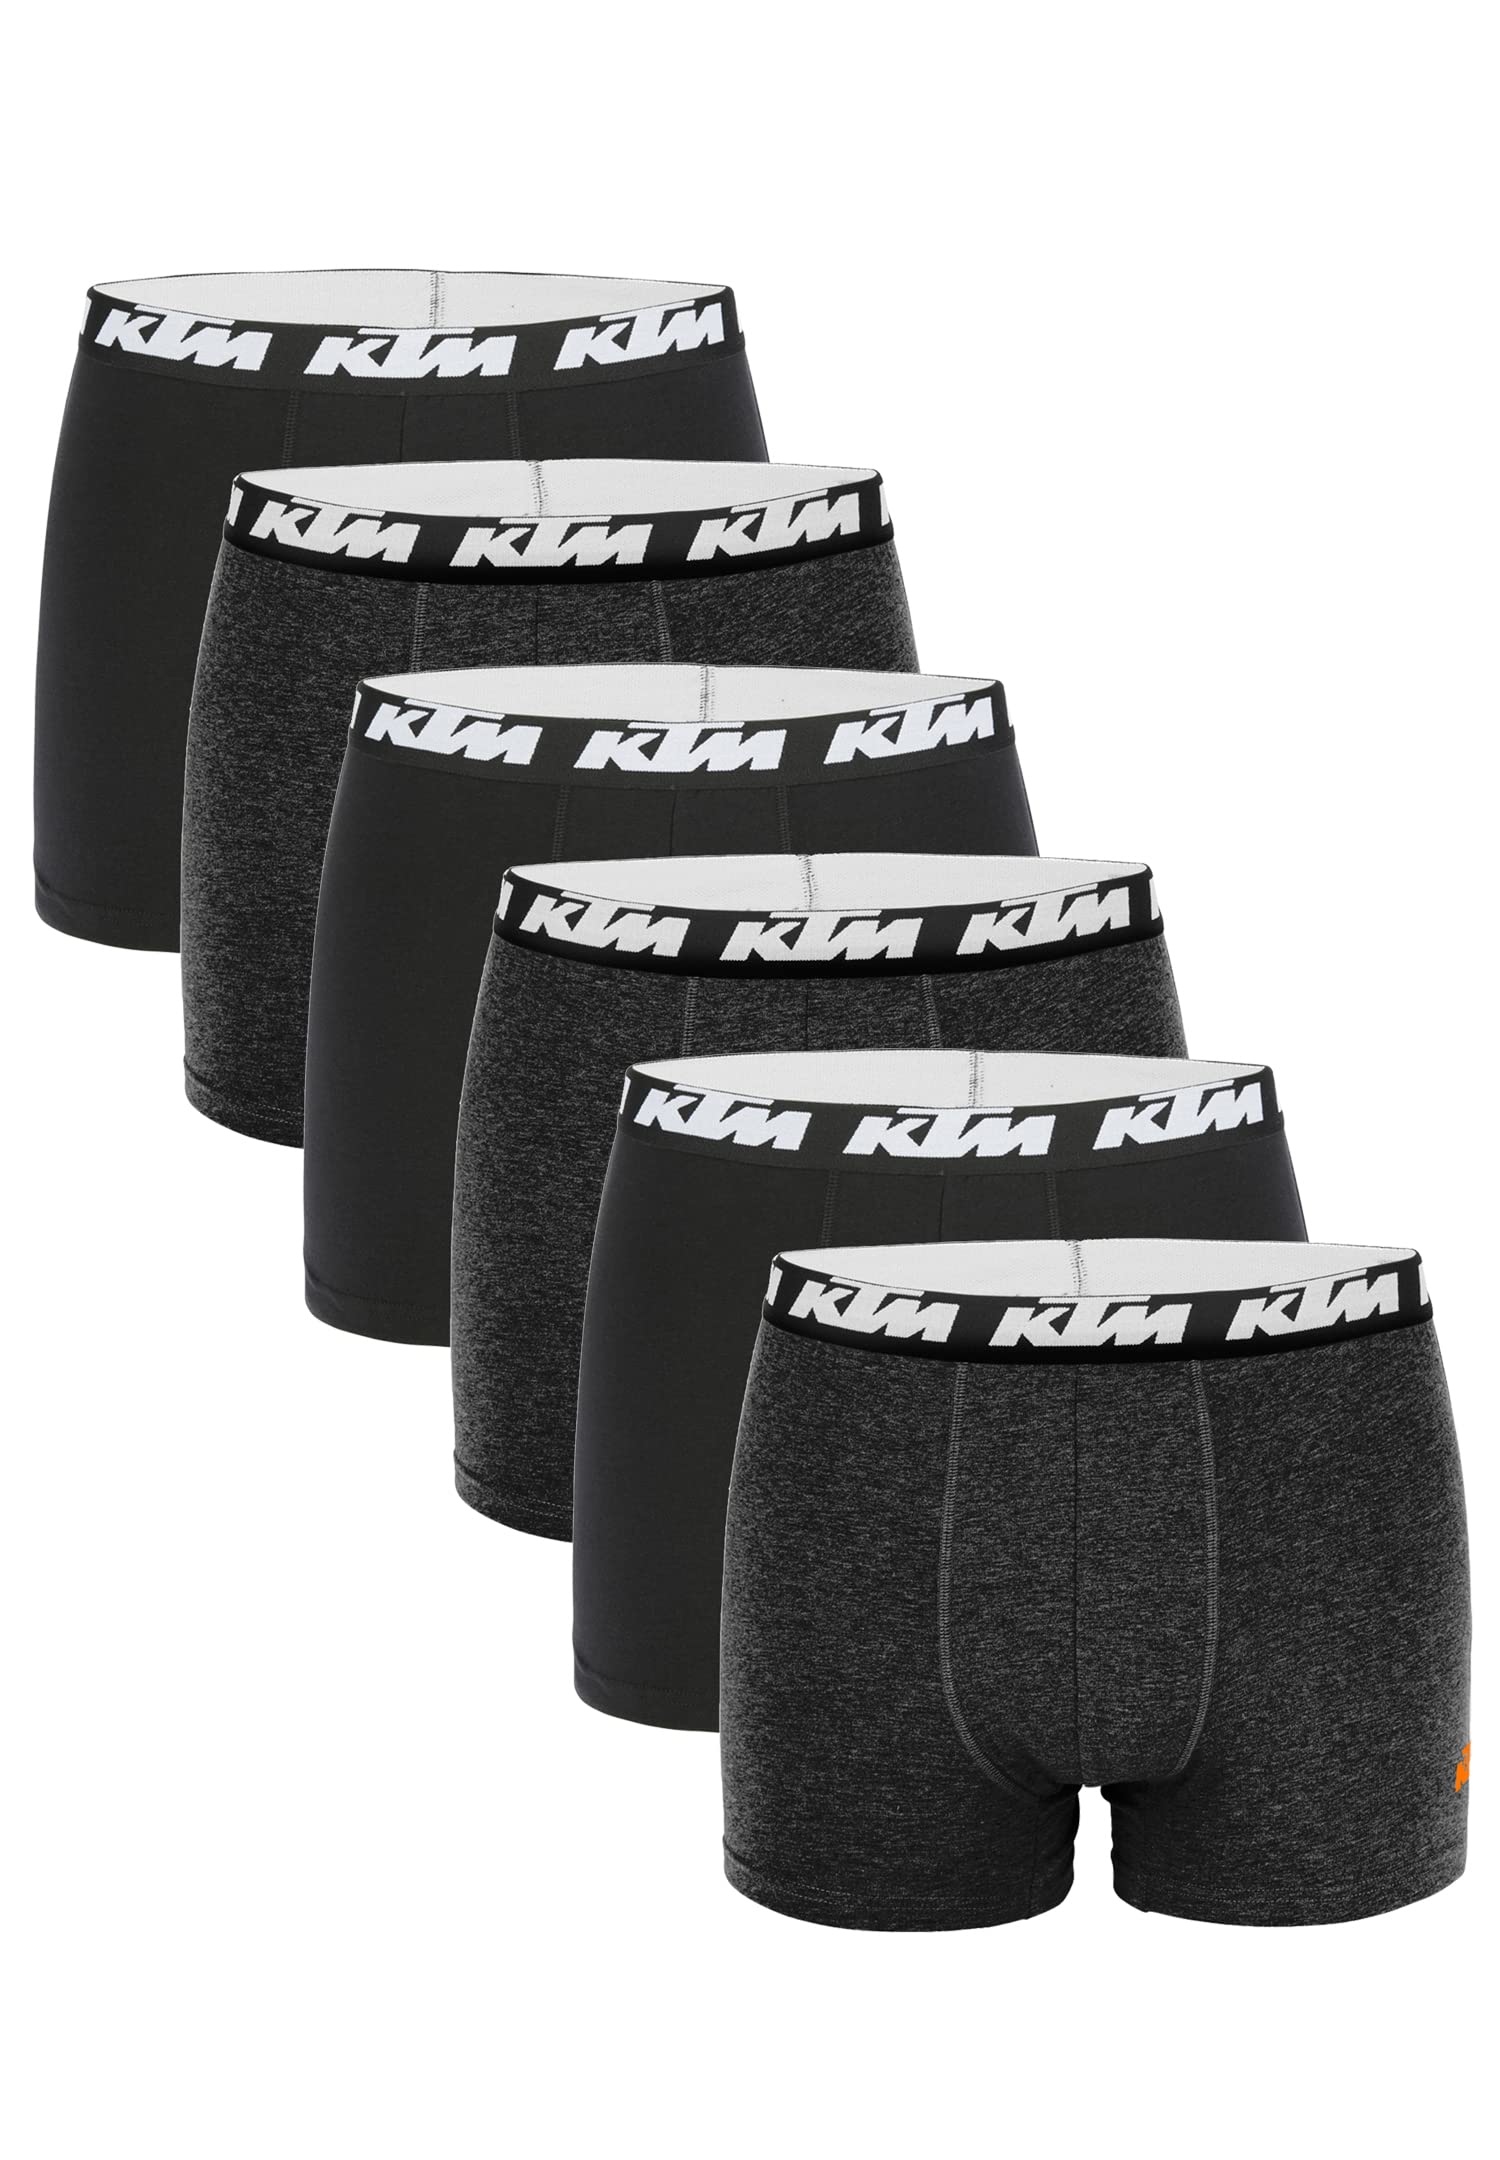 KTM by Freegun Boxershorts für Herren Unterwäsche Pant Men´s Boxer 6 er Pack, Farbe:Dark Grey / Black, Bekleidungsgröße:M